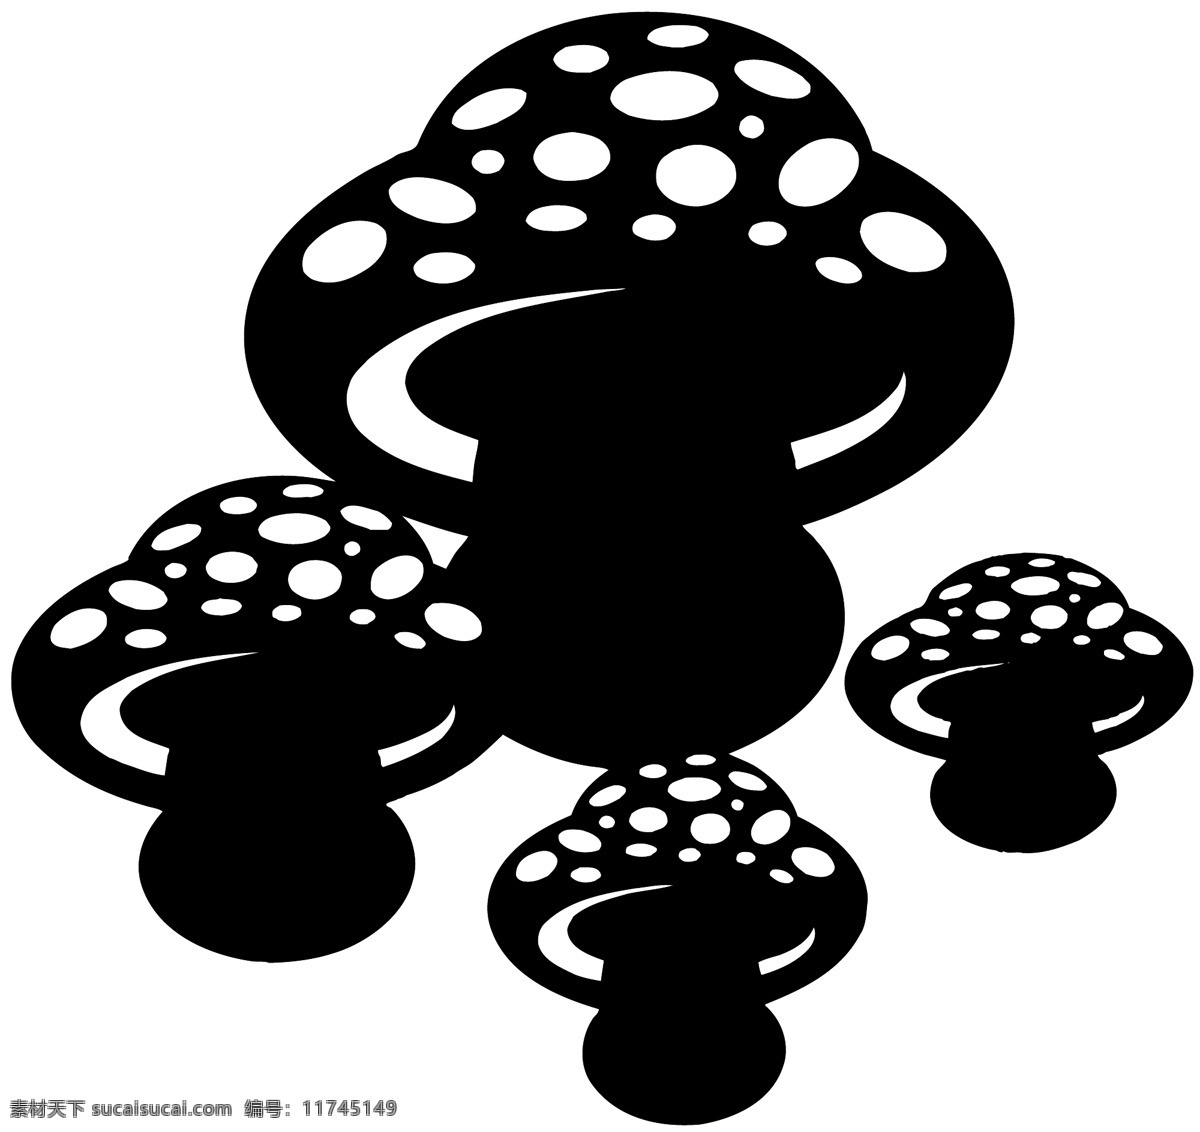 菌菇 菌类植物 矢量素材 格式 eps格式 设计素材 菌类世界 矢量植物 矢量图库 白色